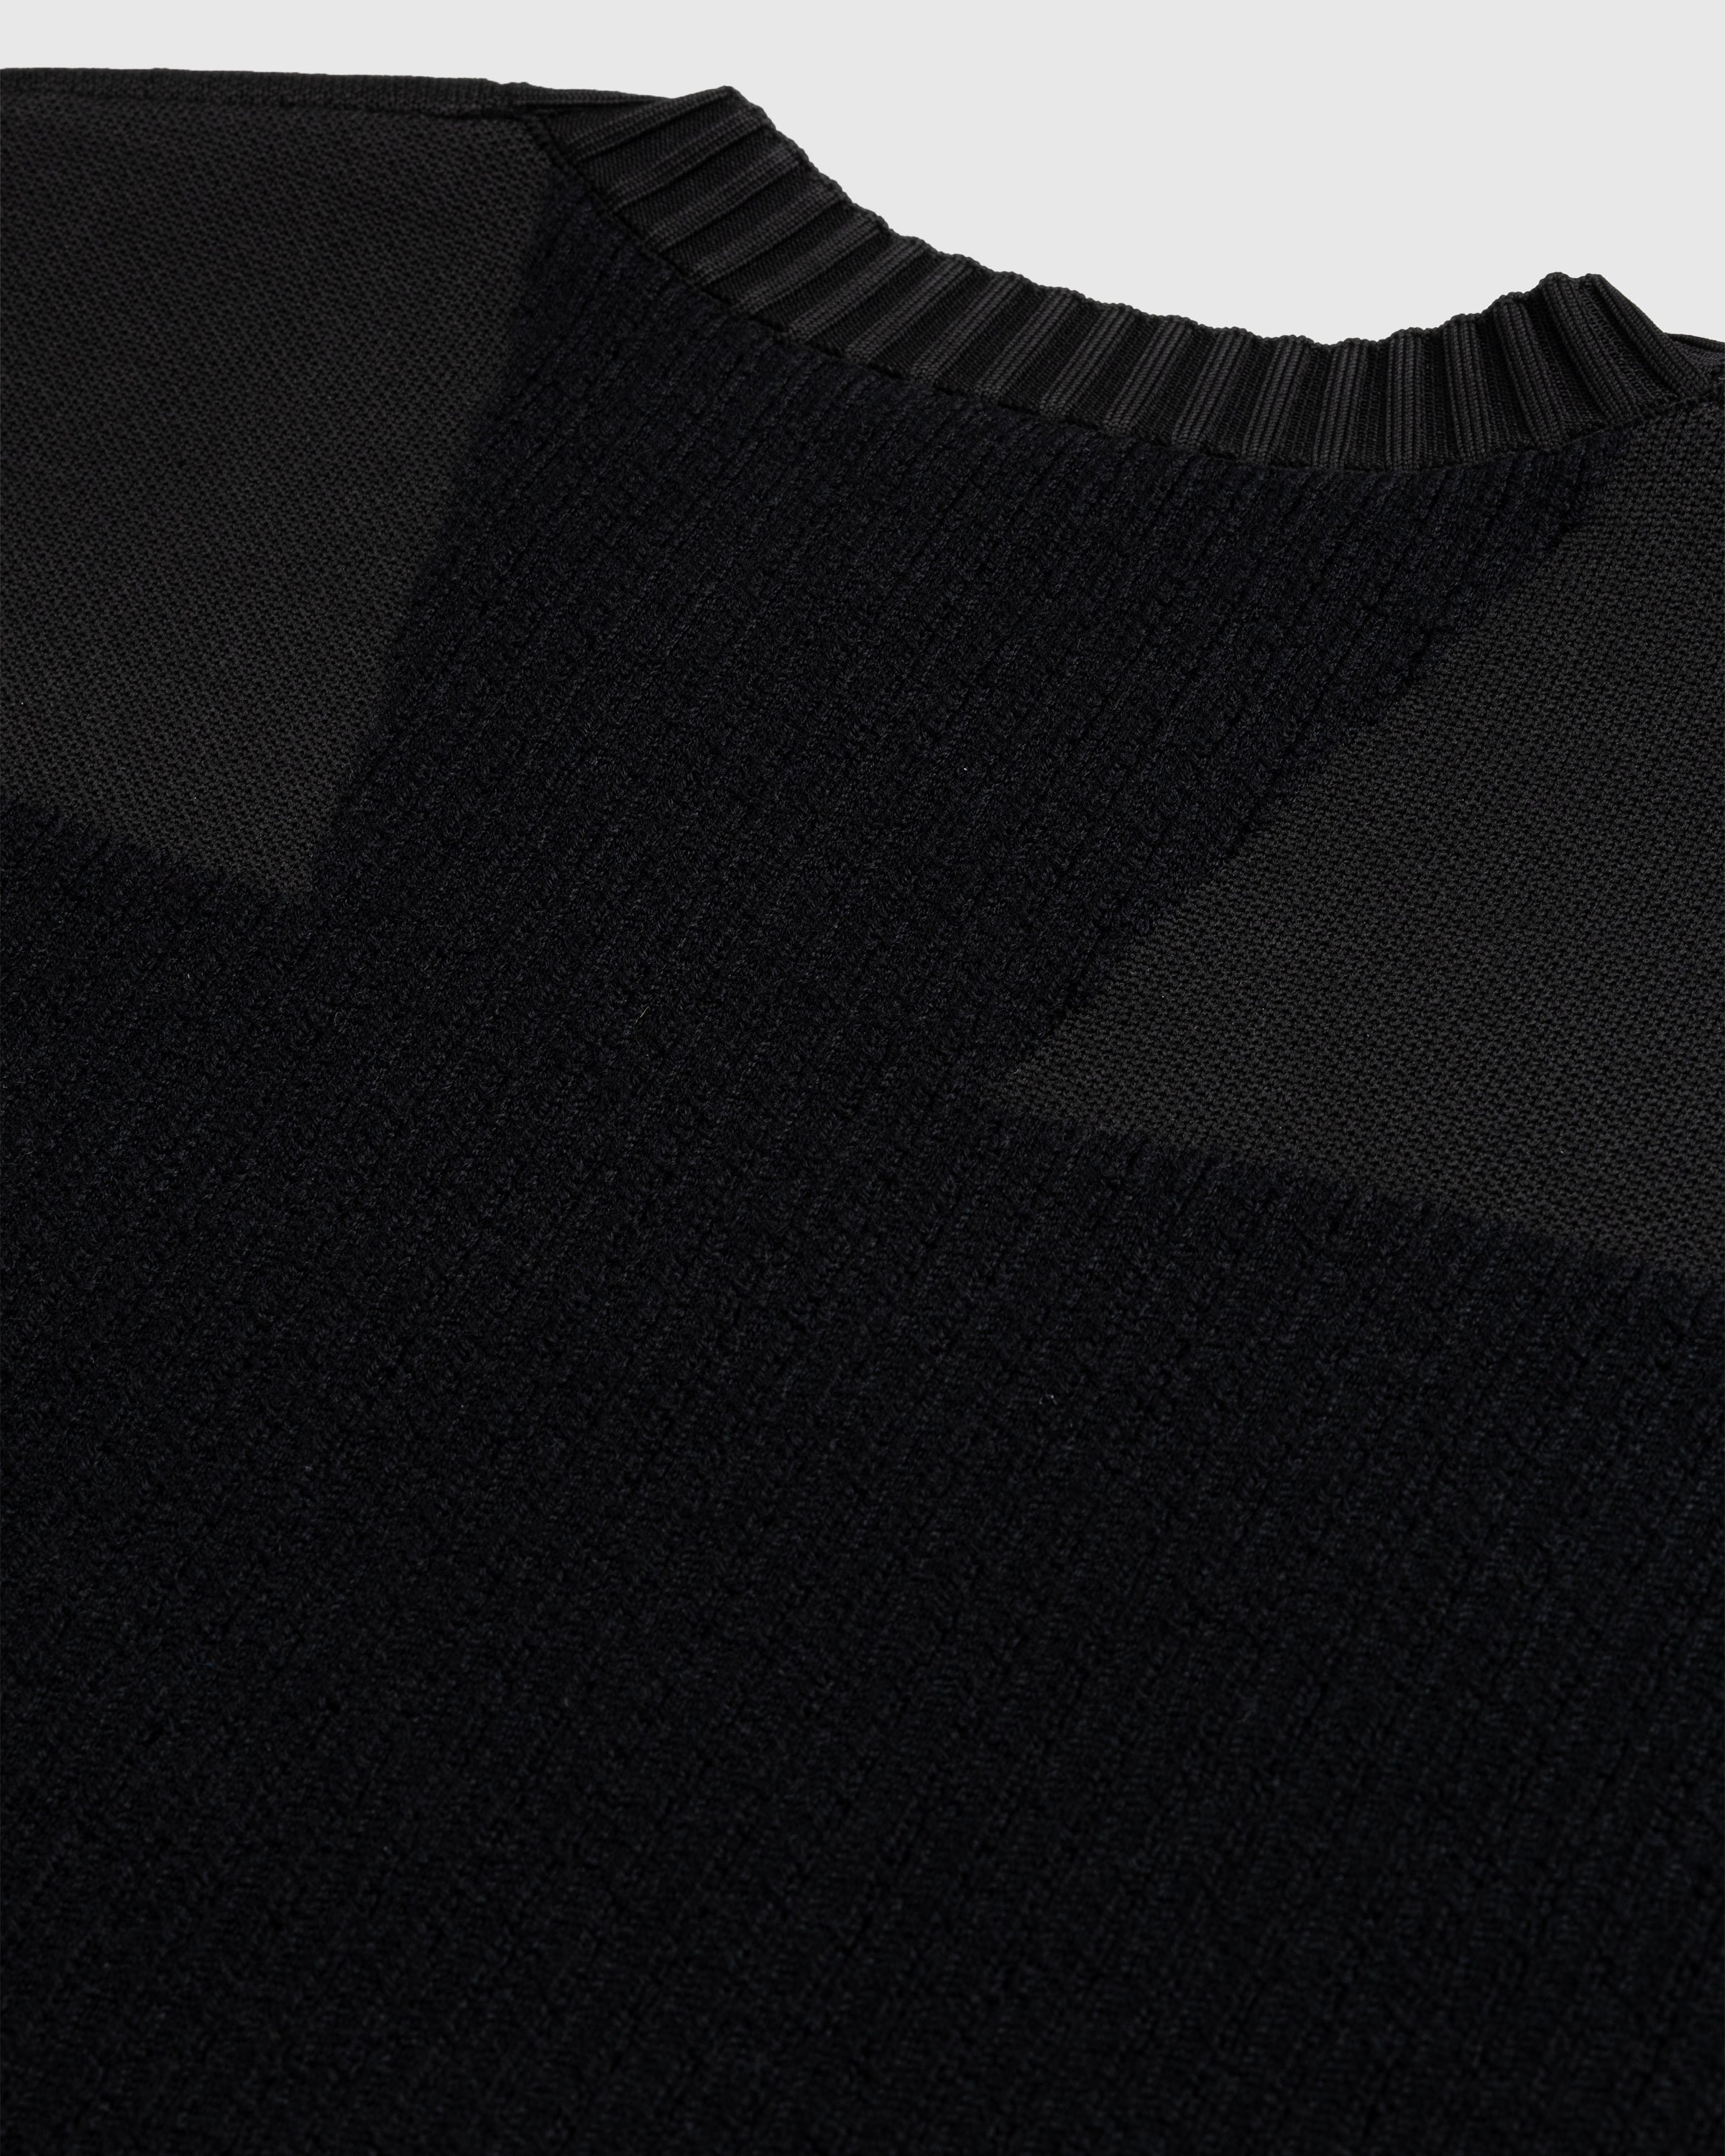 Y-3 - Utility Crewneck Sweater Black - Clothing - Black - Image 6